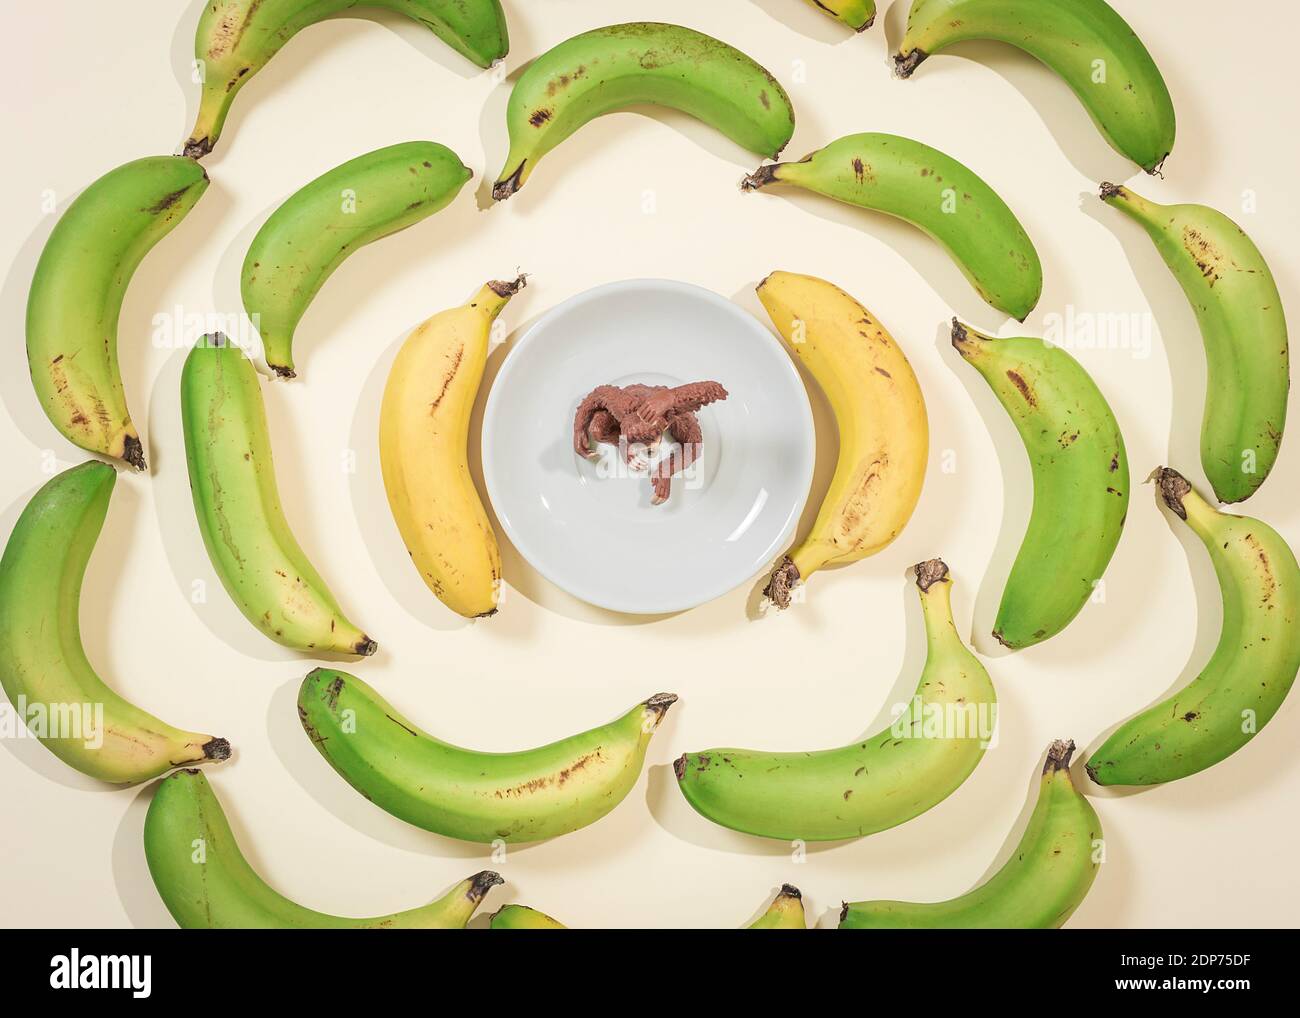 Bananes dans un cercle avec un singe jouet dans le centrer sur une photo en vue de dessus Banque D'Images